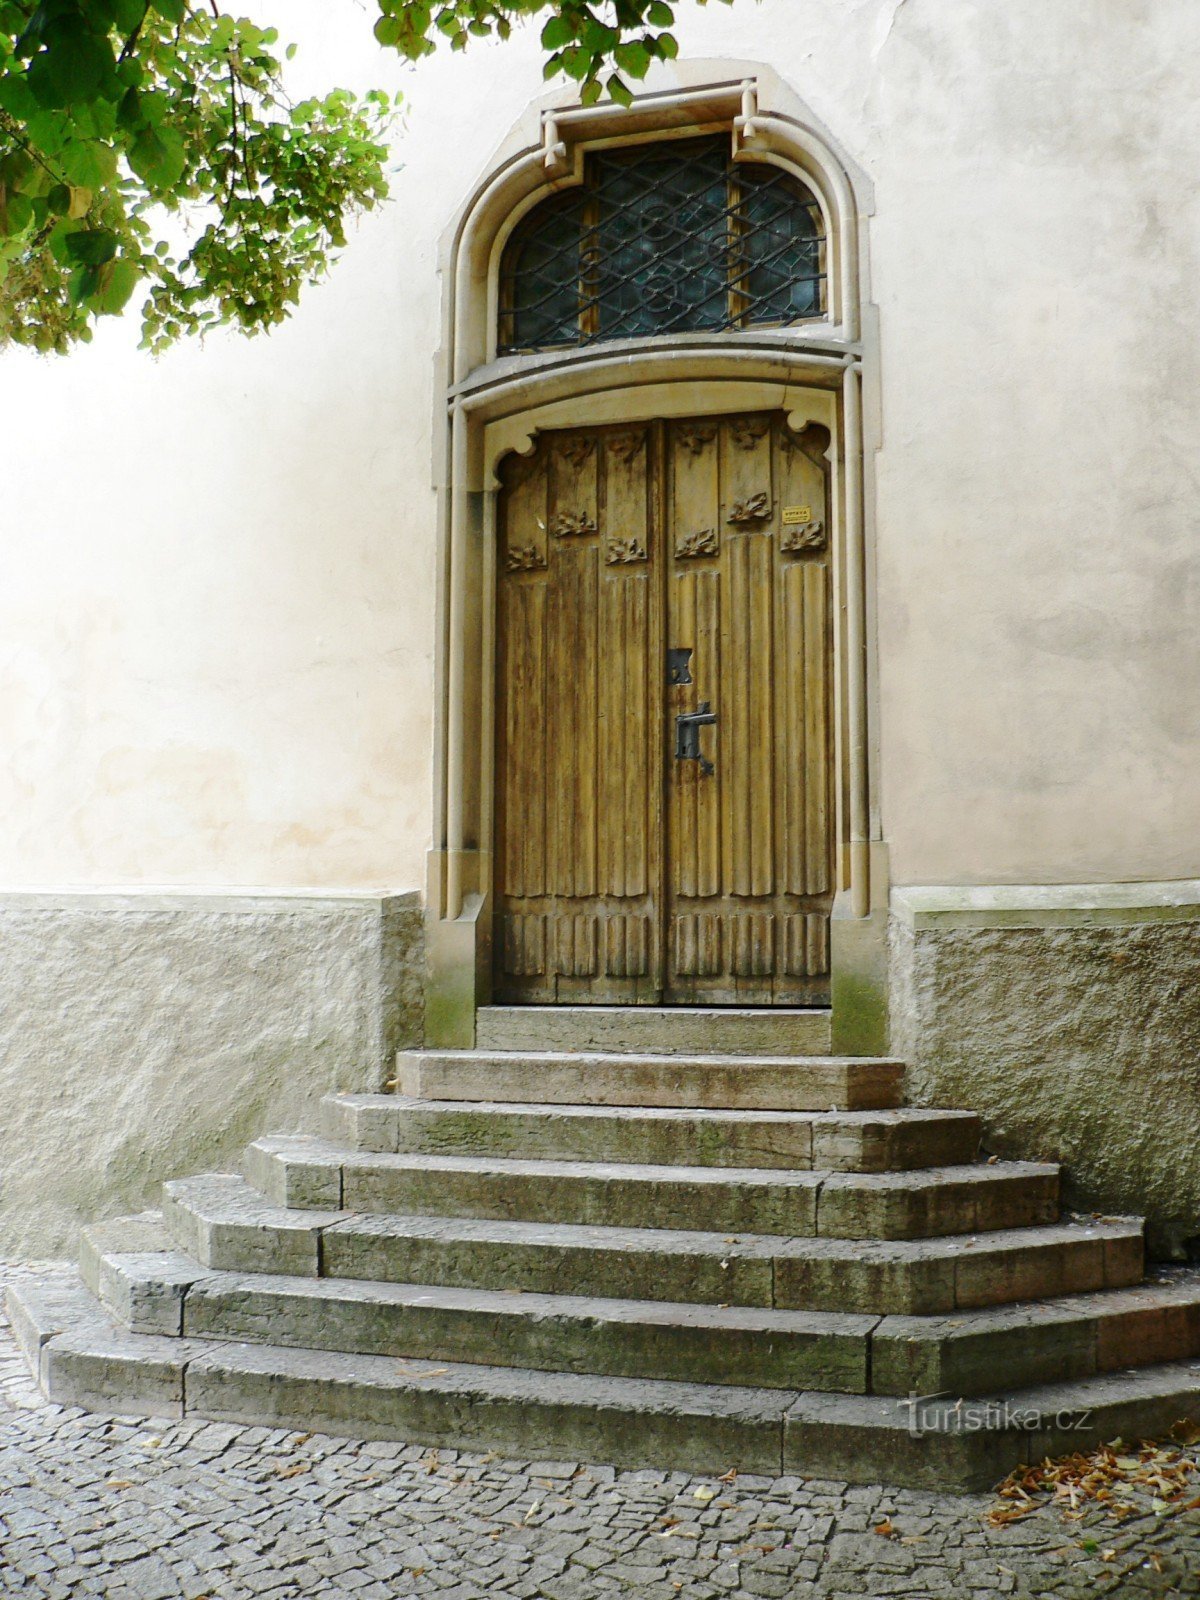 根据 1901 年之后新开放的教堂圣器收藏室的入口